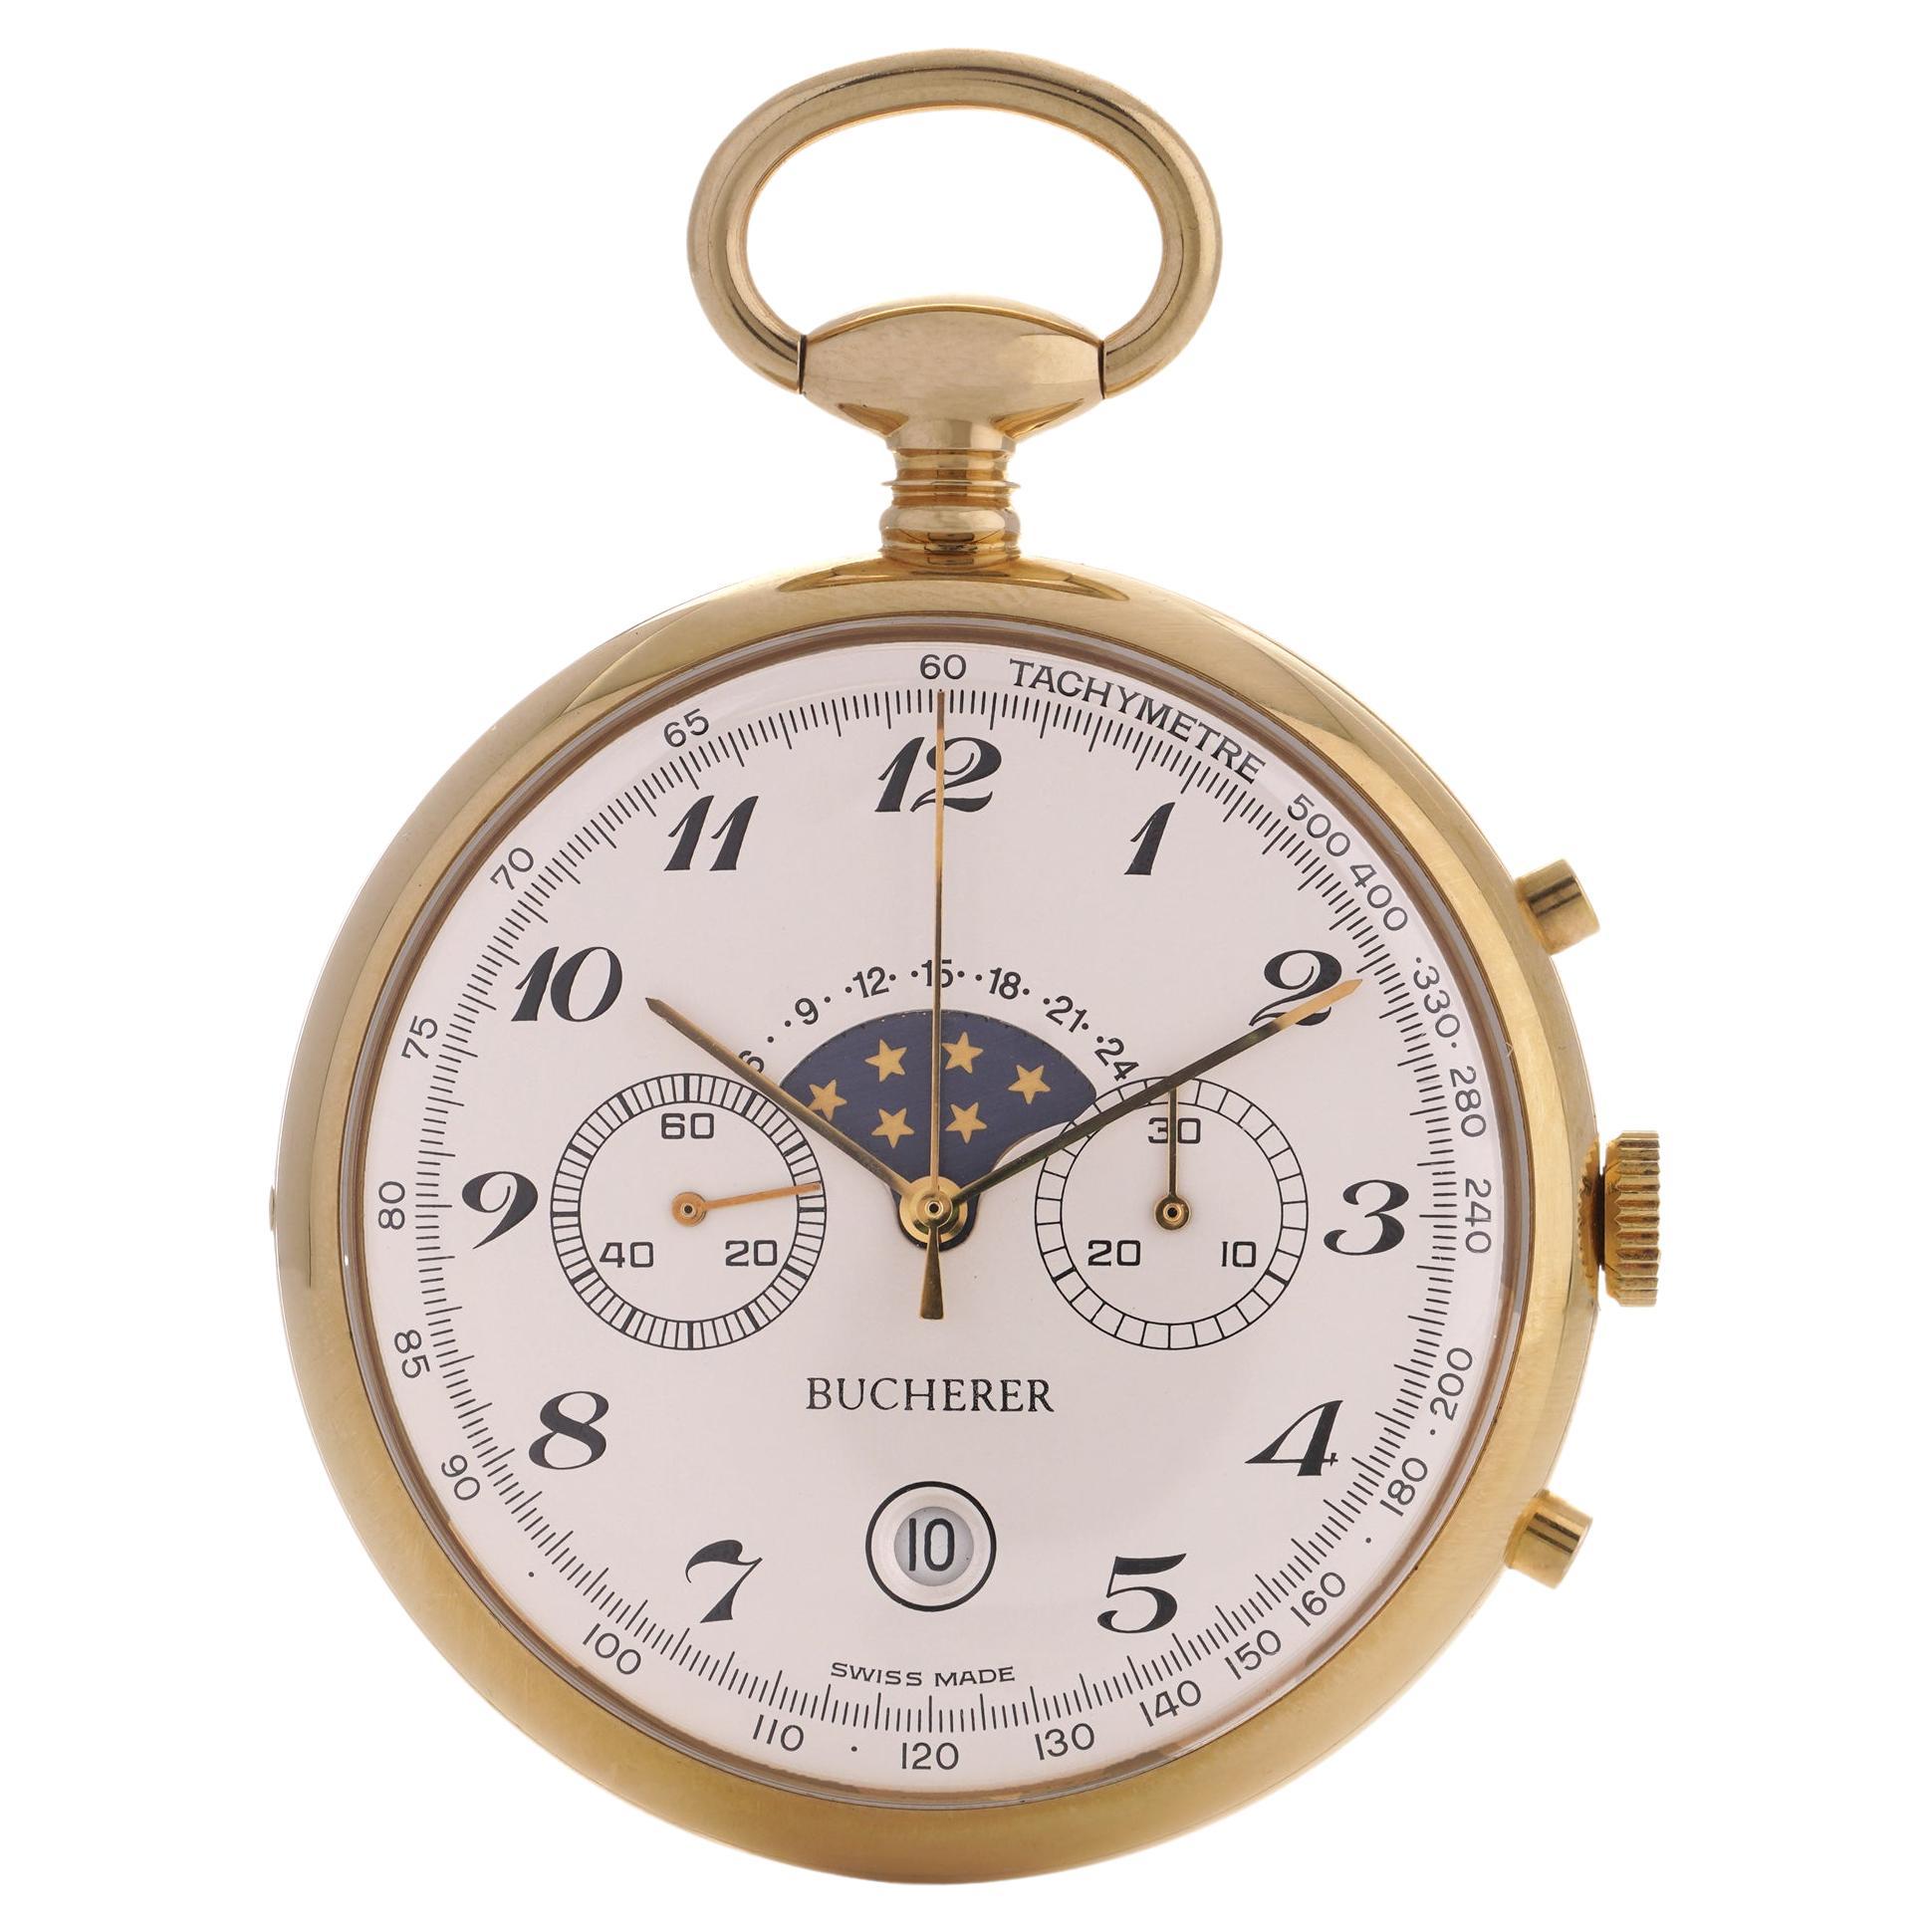 Bucherer Vergoldete Mondphase Chronograph-Taschenuhr mit Vergoldung